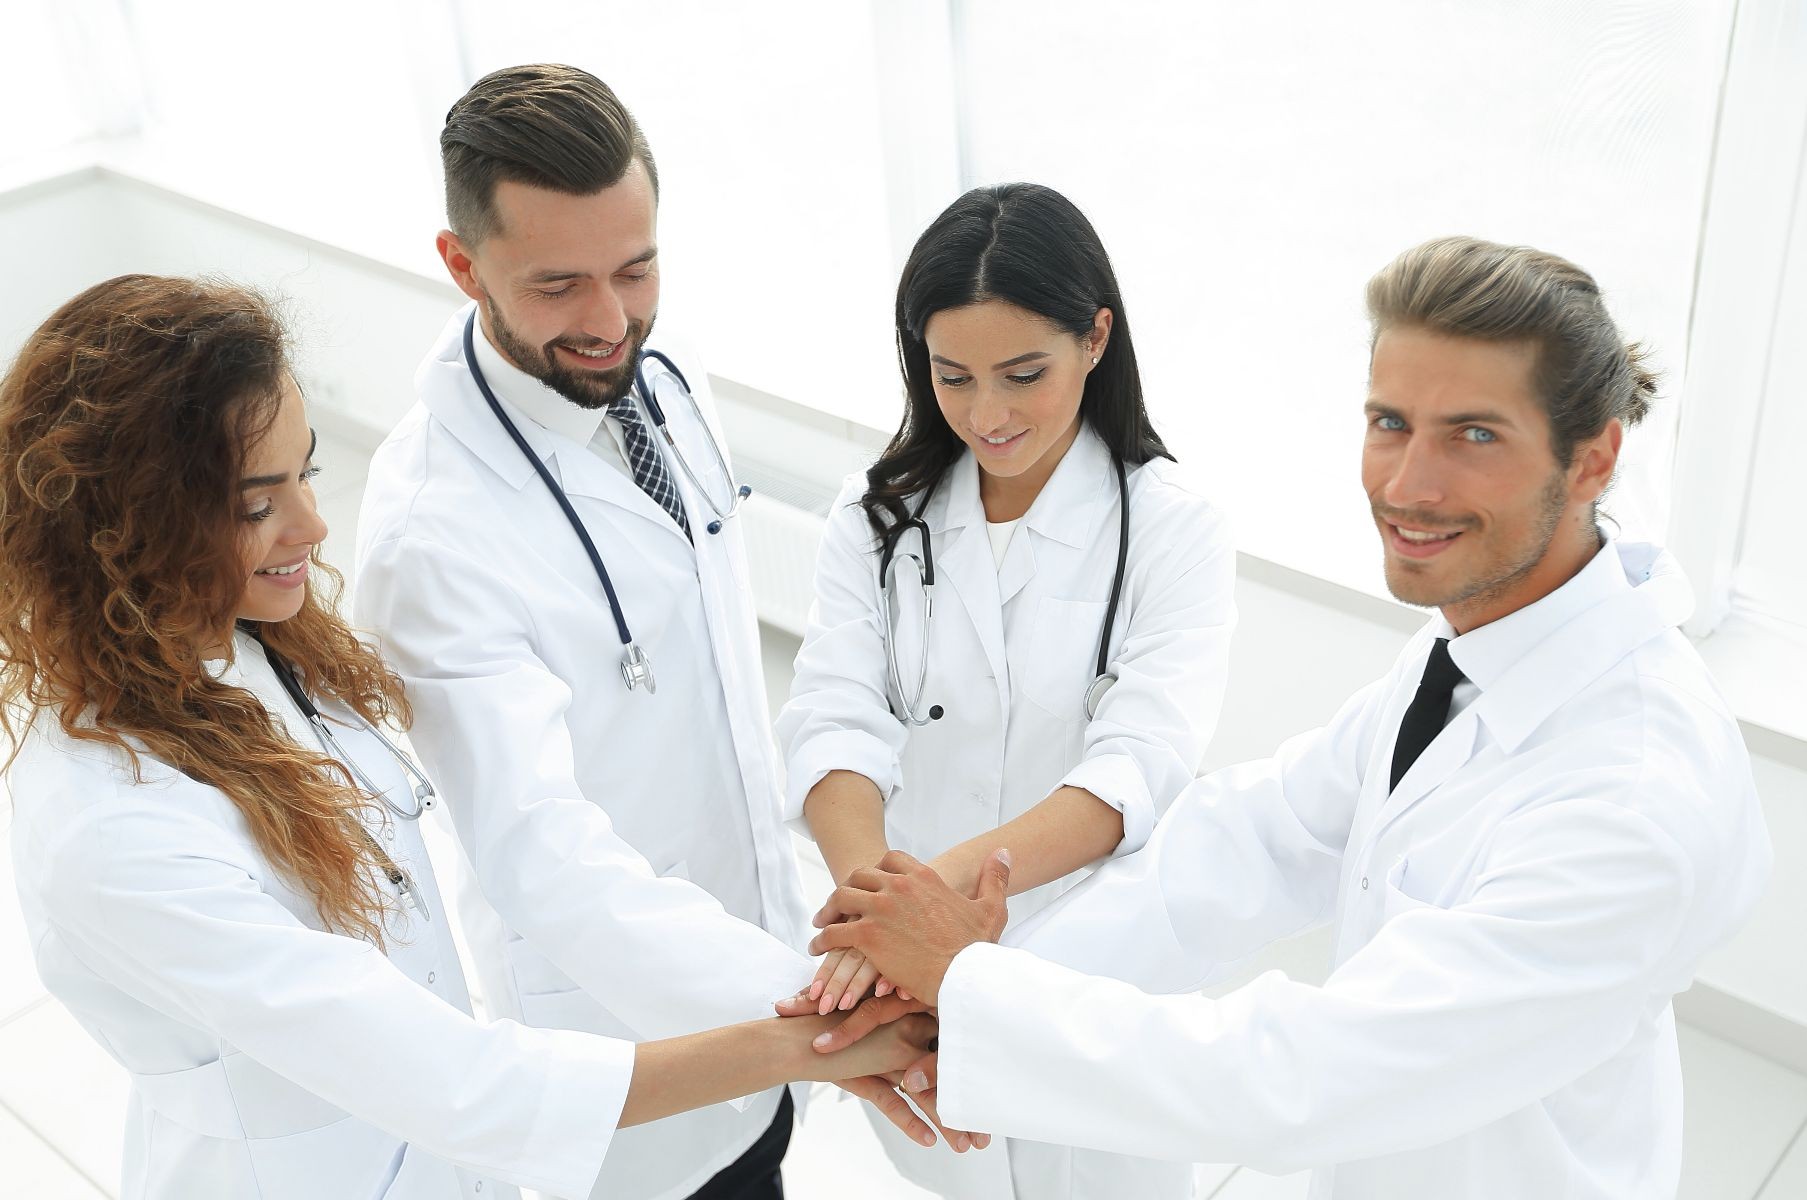 equipo medico juntando manos